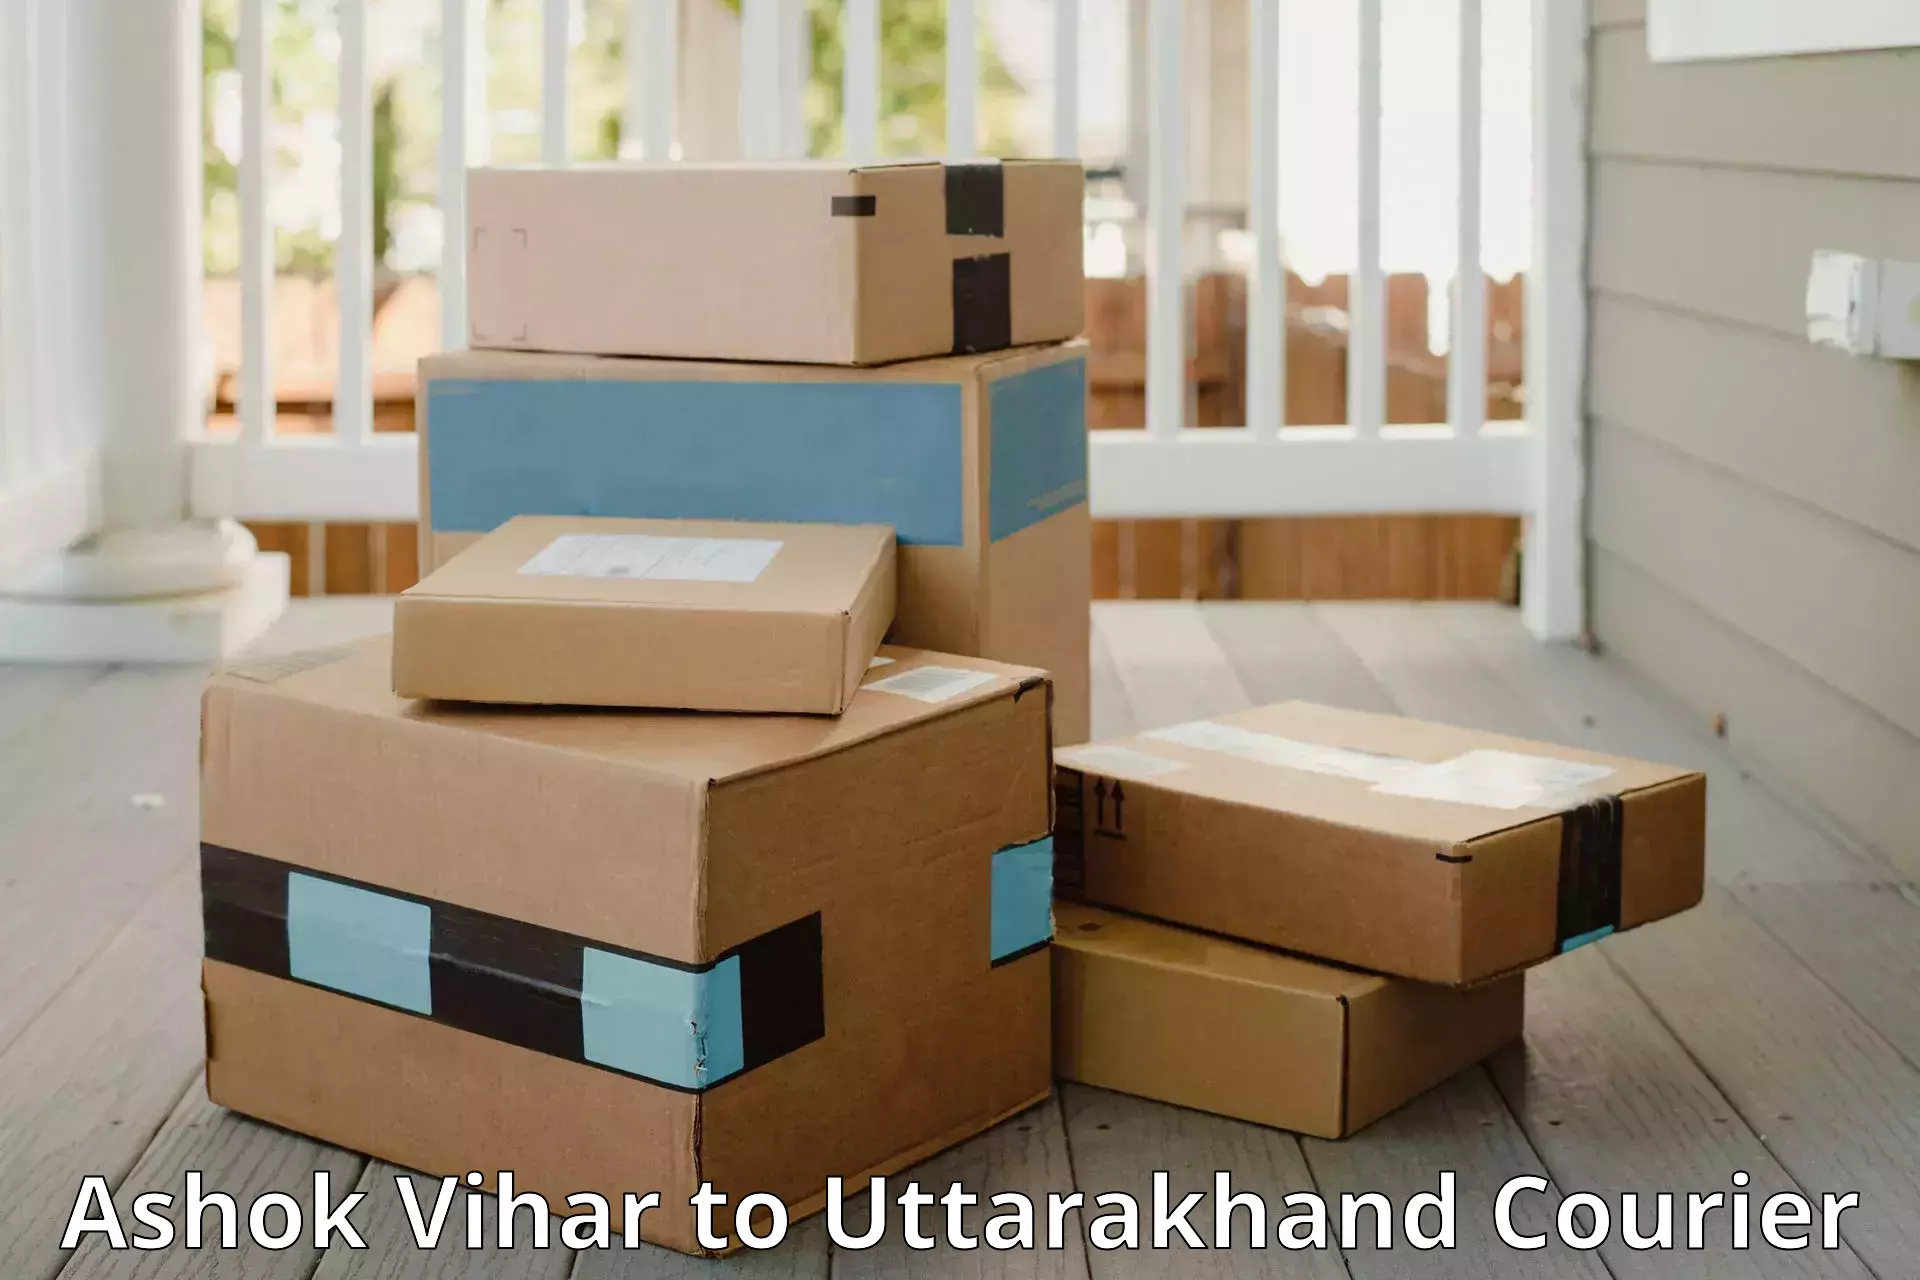 Luggage shipment specialists Ashok Vihar to Uttarakhand